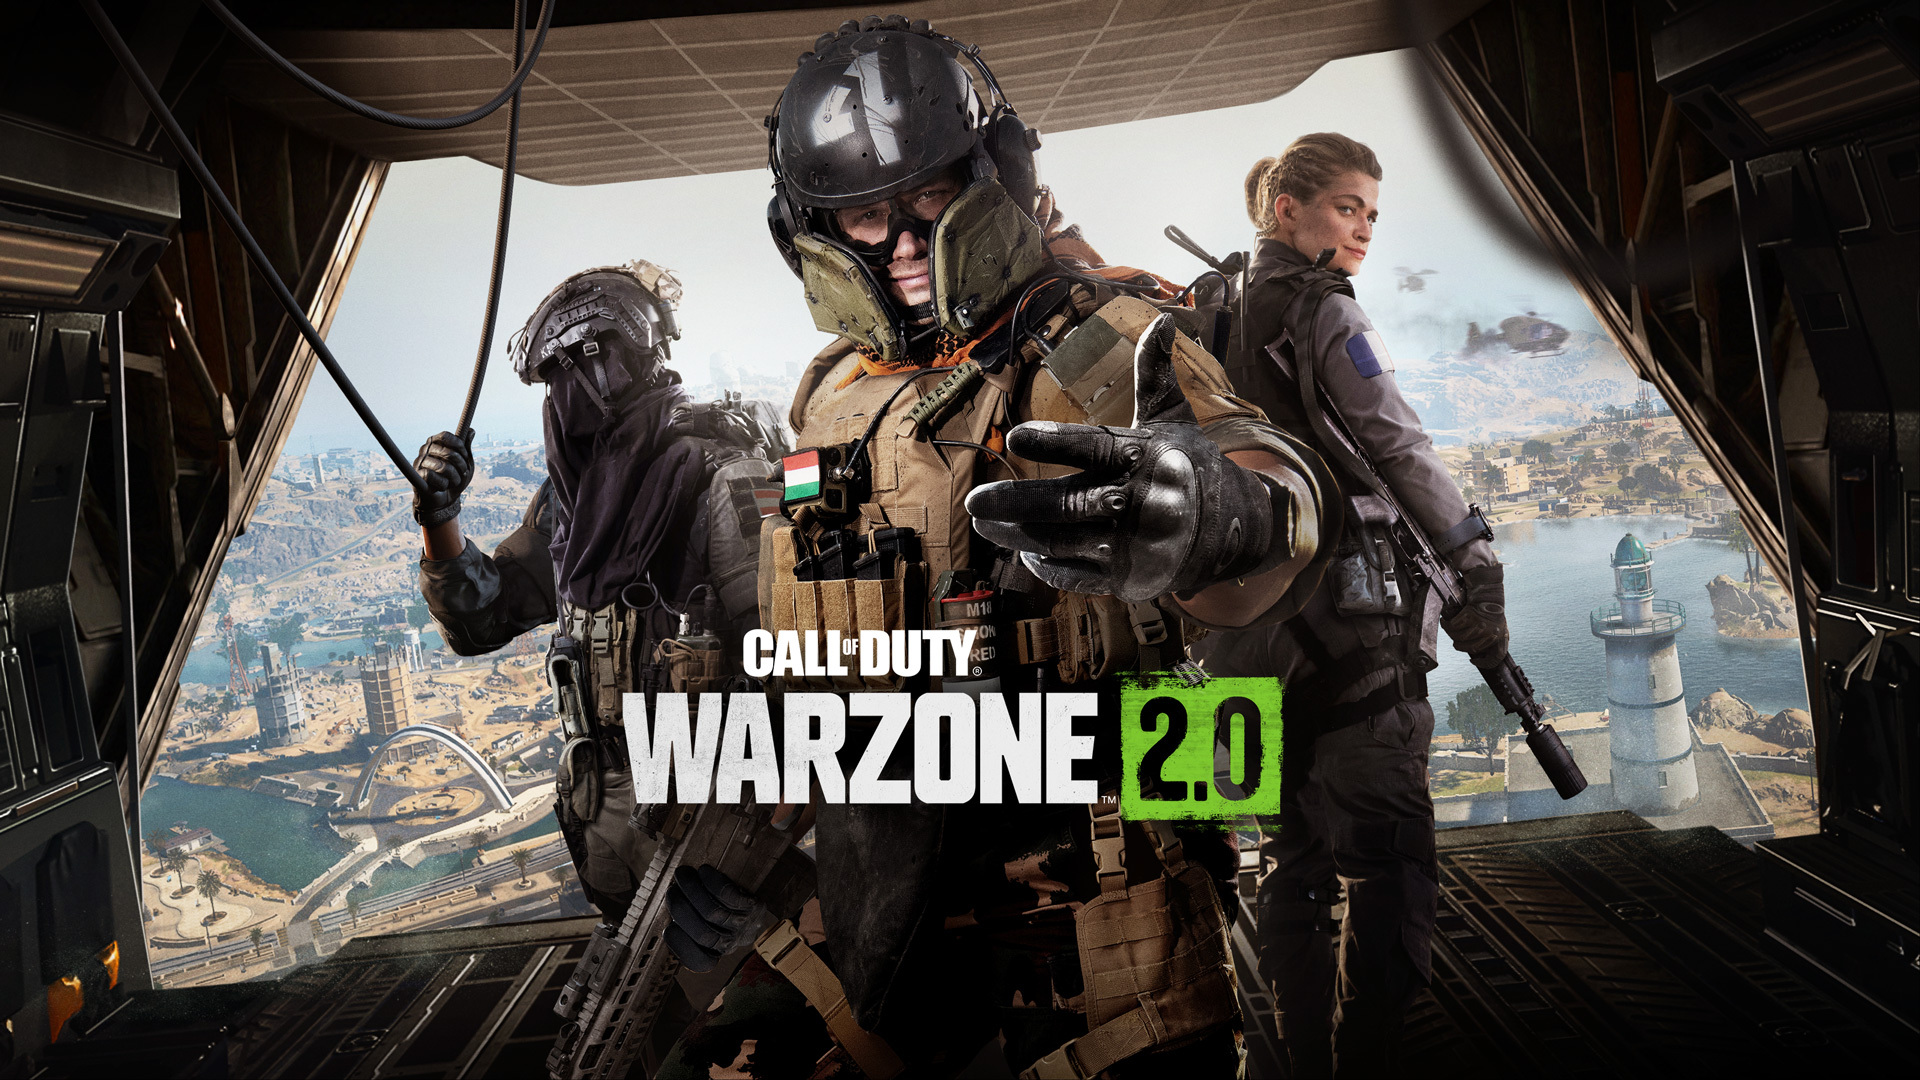 Gracze Warzone 2.0 zgłaszają błąd, który zmusza ich do kupienia Modern Warfare II, aby zagrać w grę